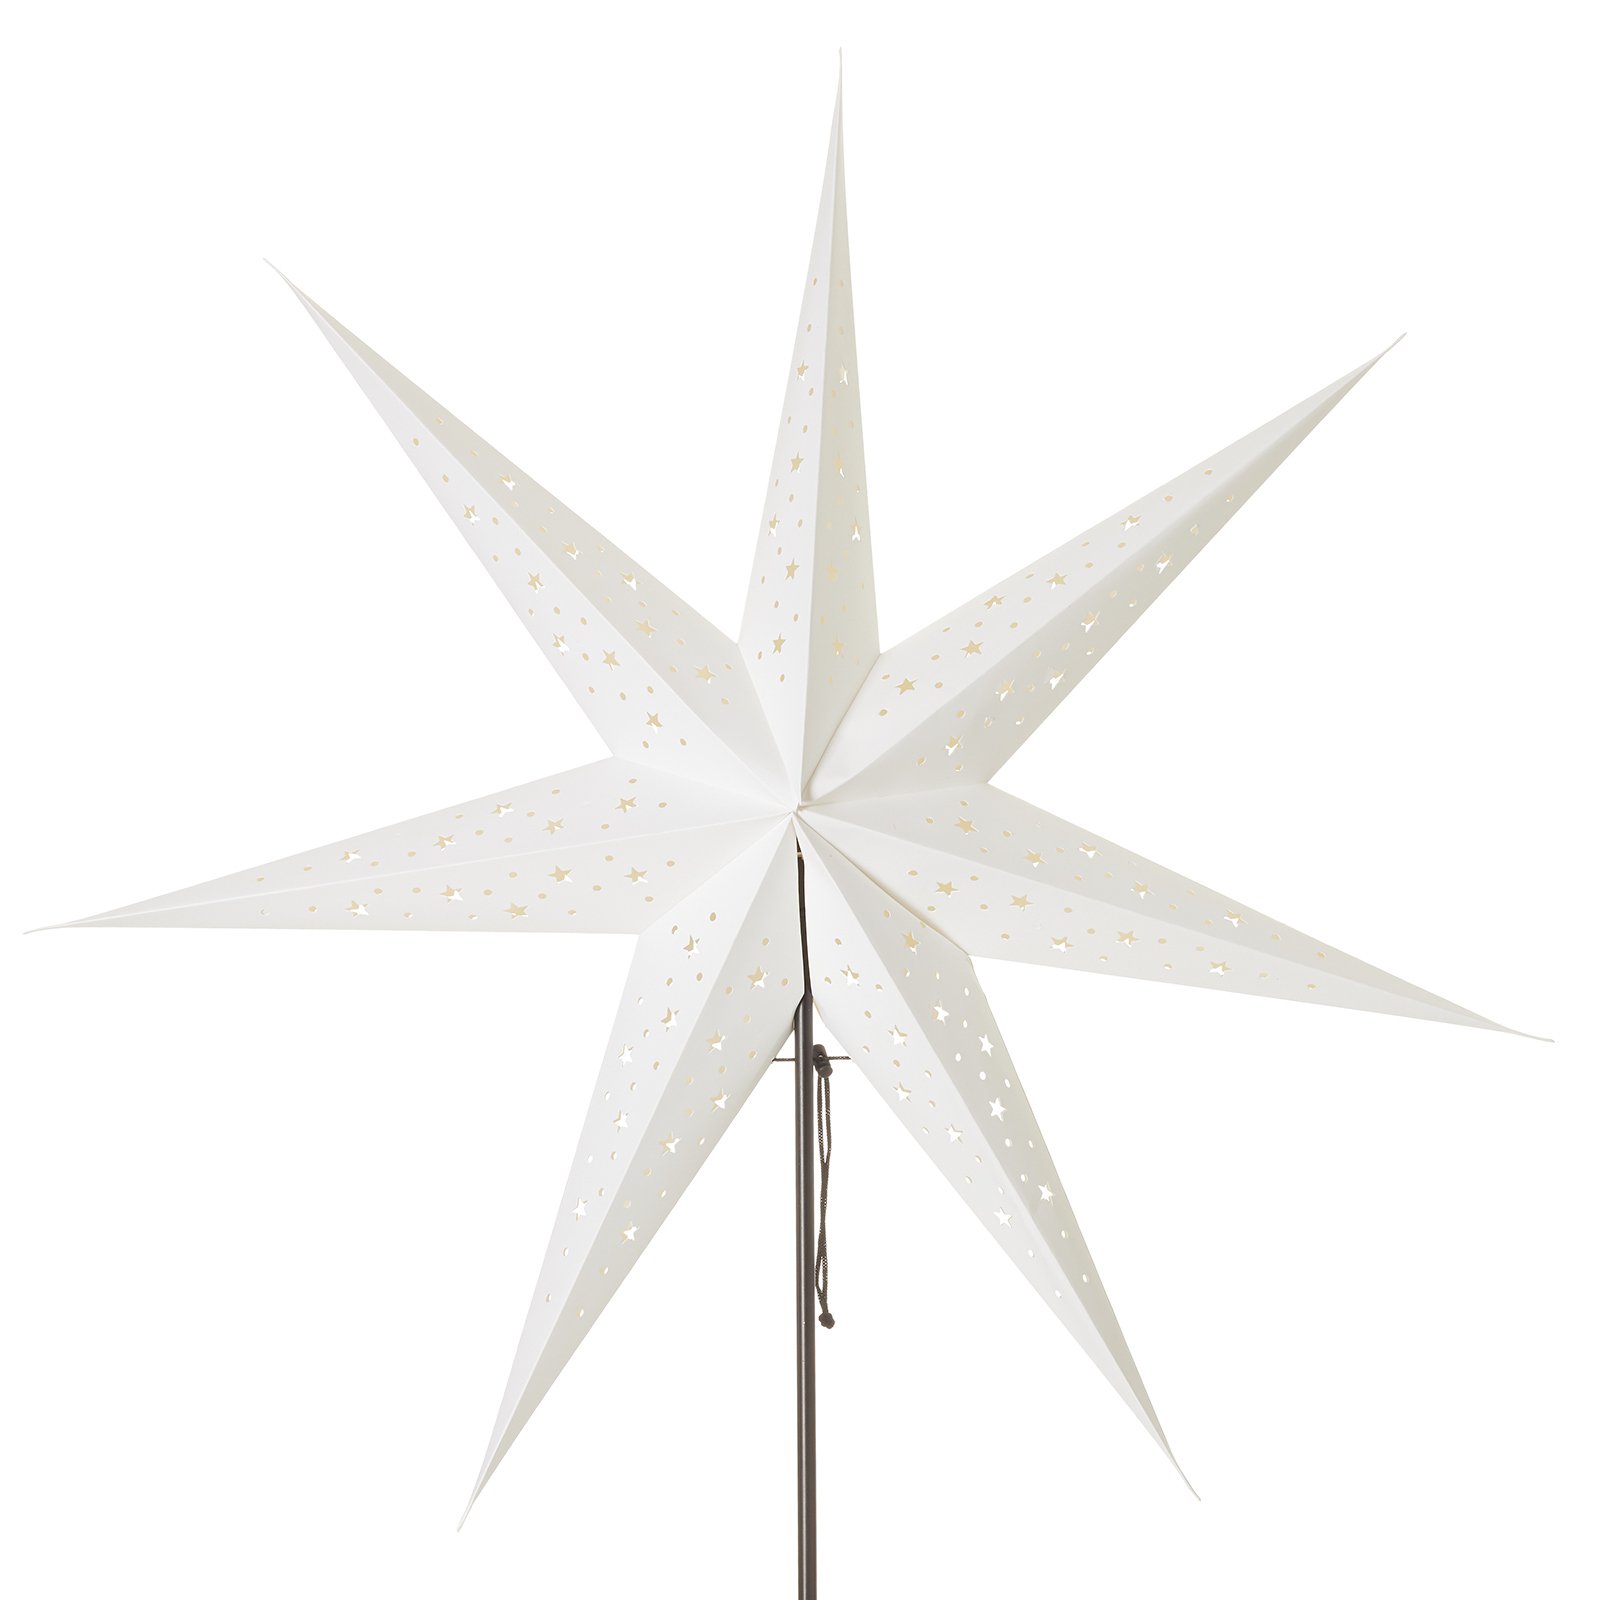 Σταθερό αστέρι Solvalla, ύψος 100 cm, λευκό